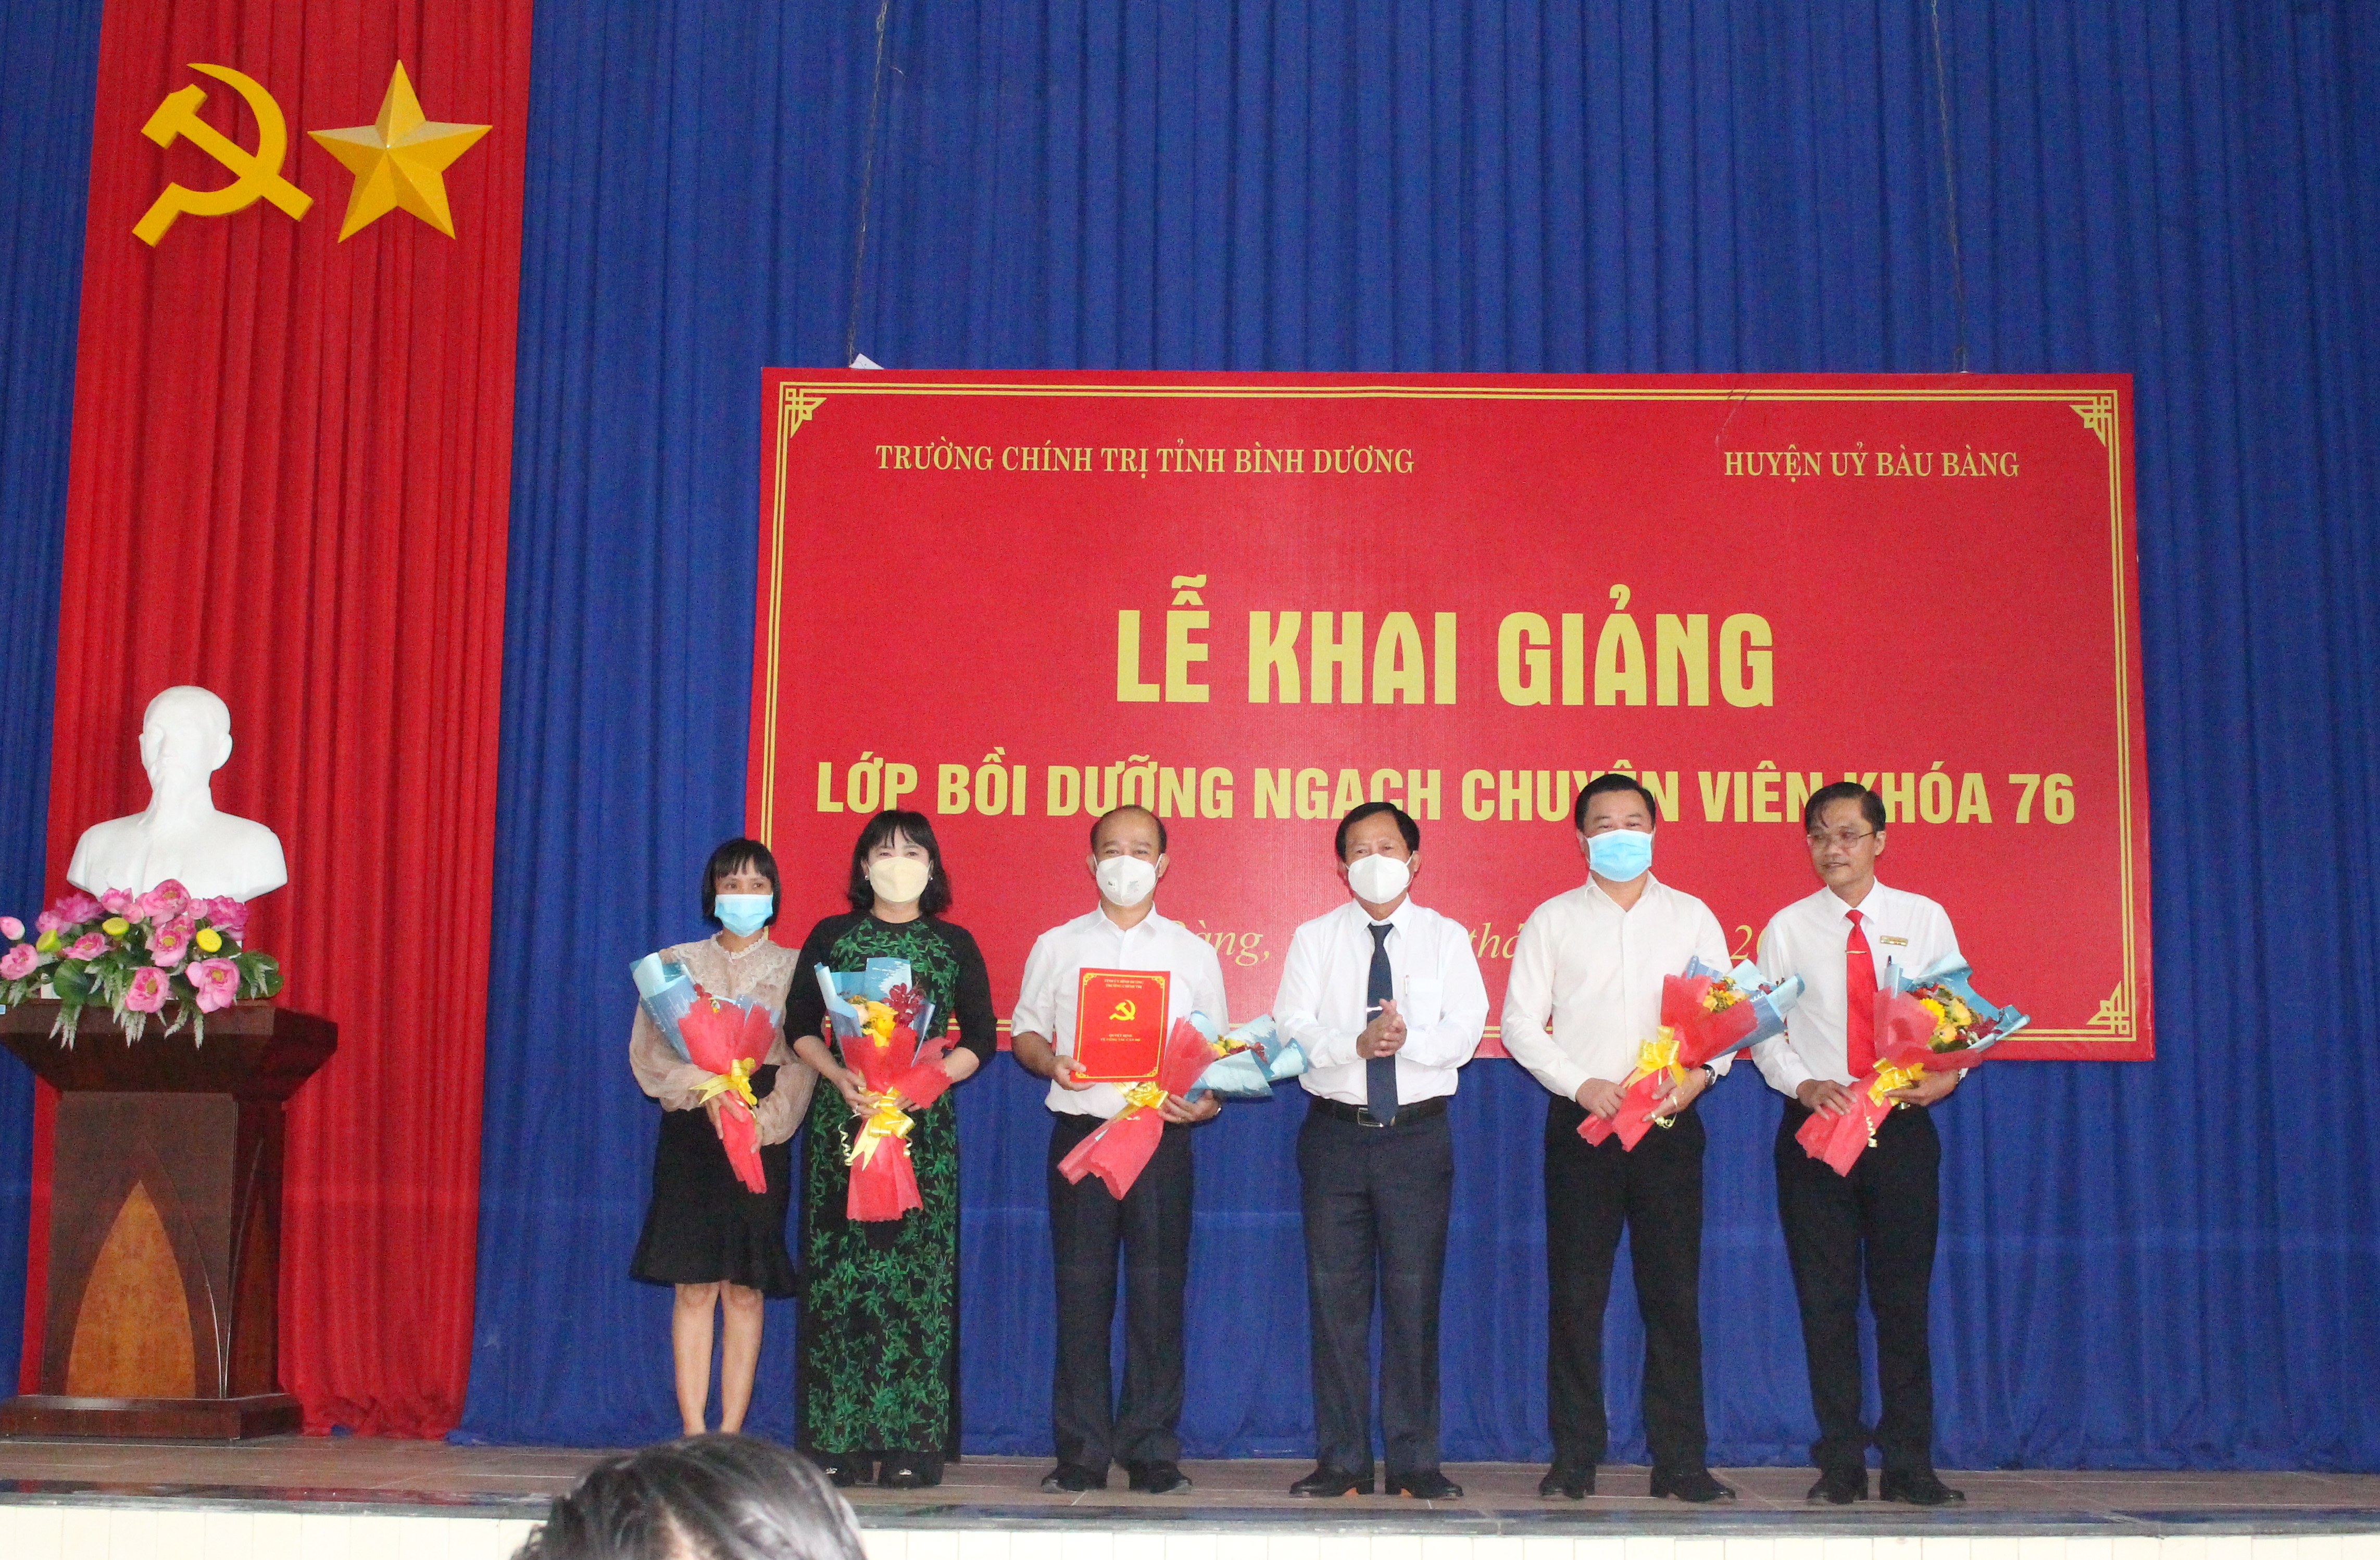 Lãnh đạo huyện Bàu Bàng tặng hoa cho Ban Quản lý Lớp bồi dưỡng Ngạch chuyên viên khóa 76 tại huyện Bàu Bàng